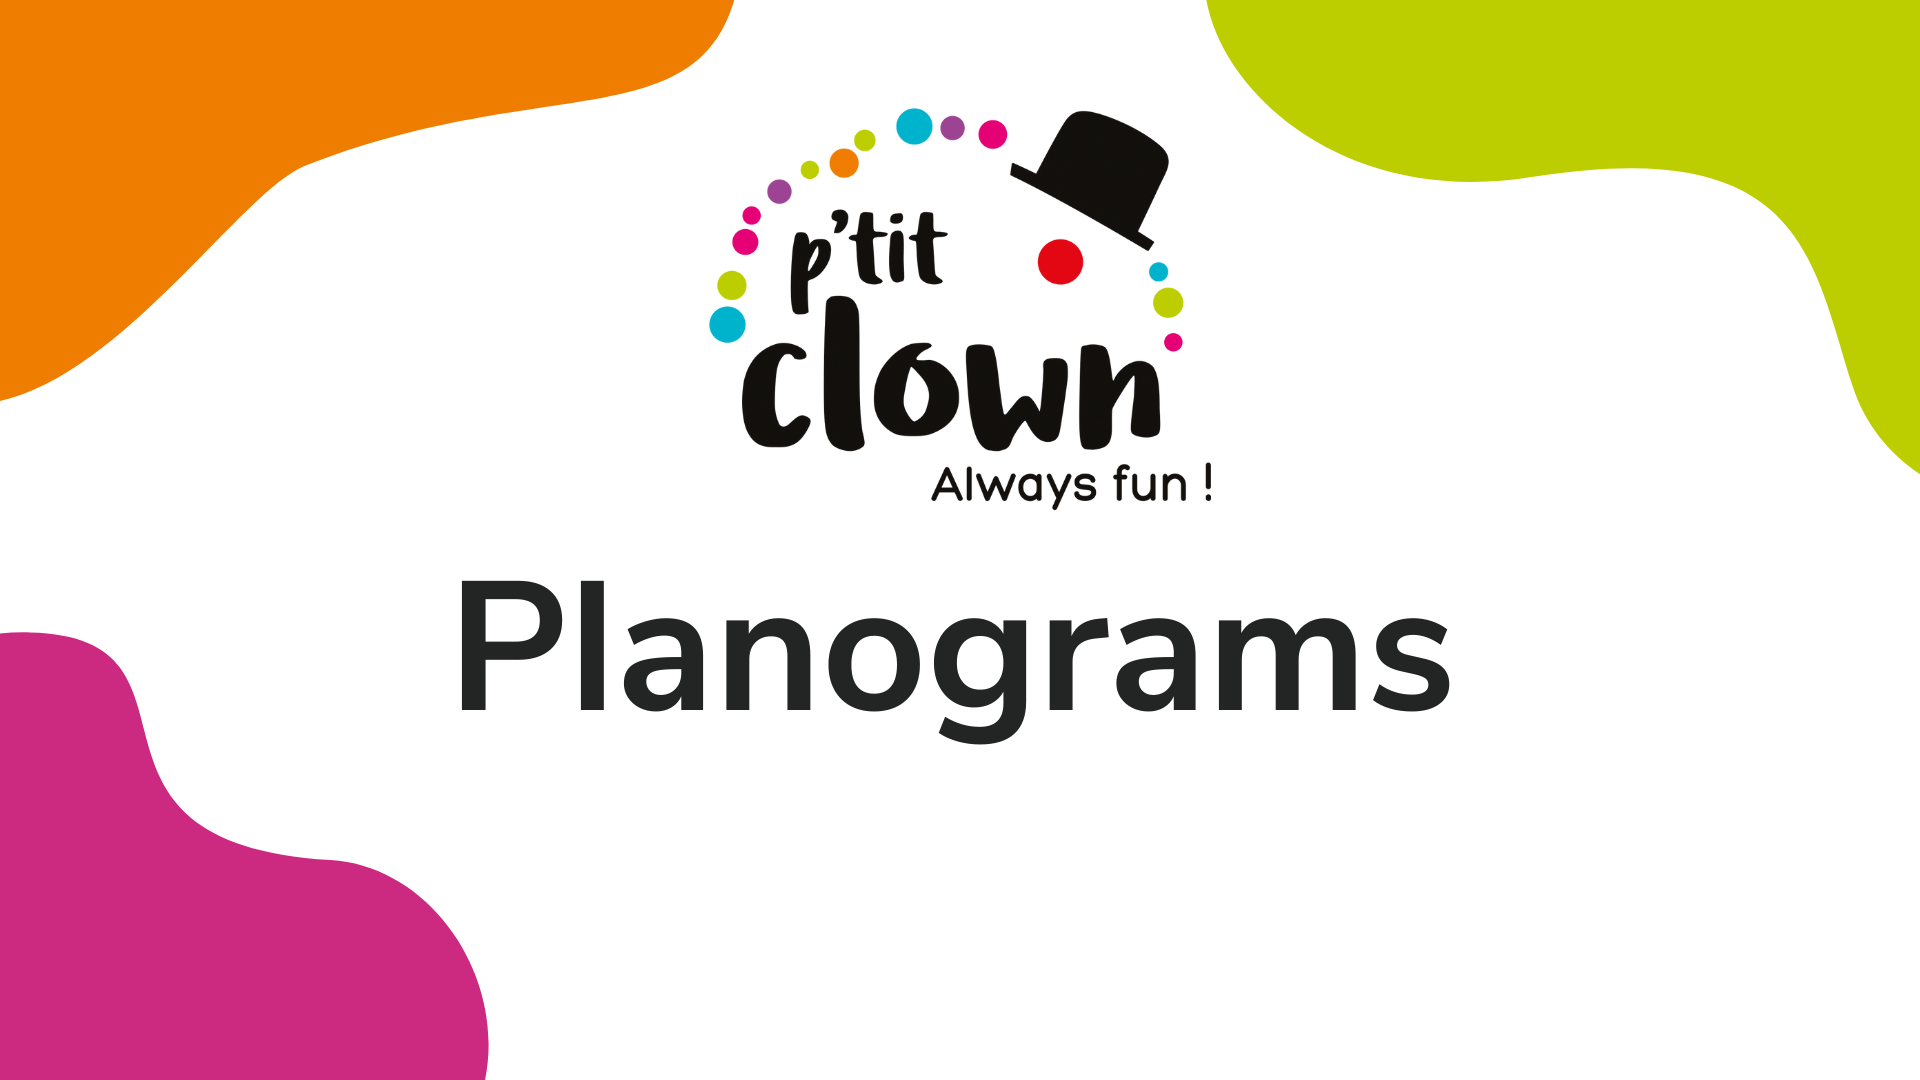 Planograms P'tit clown